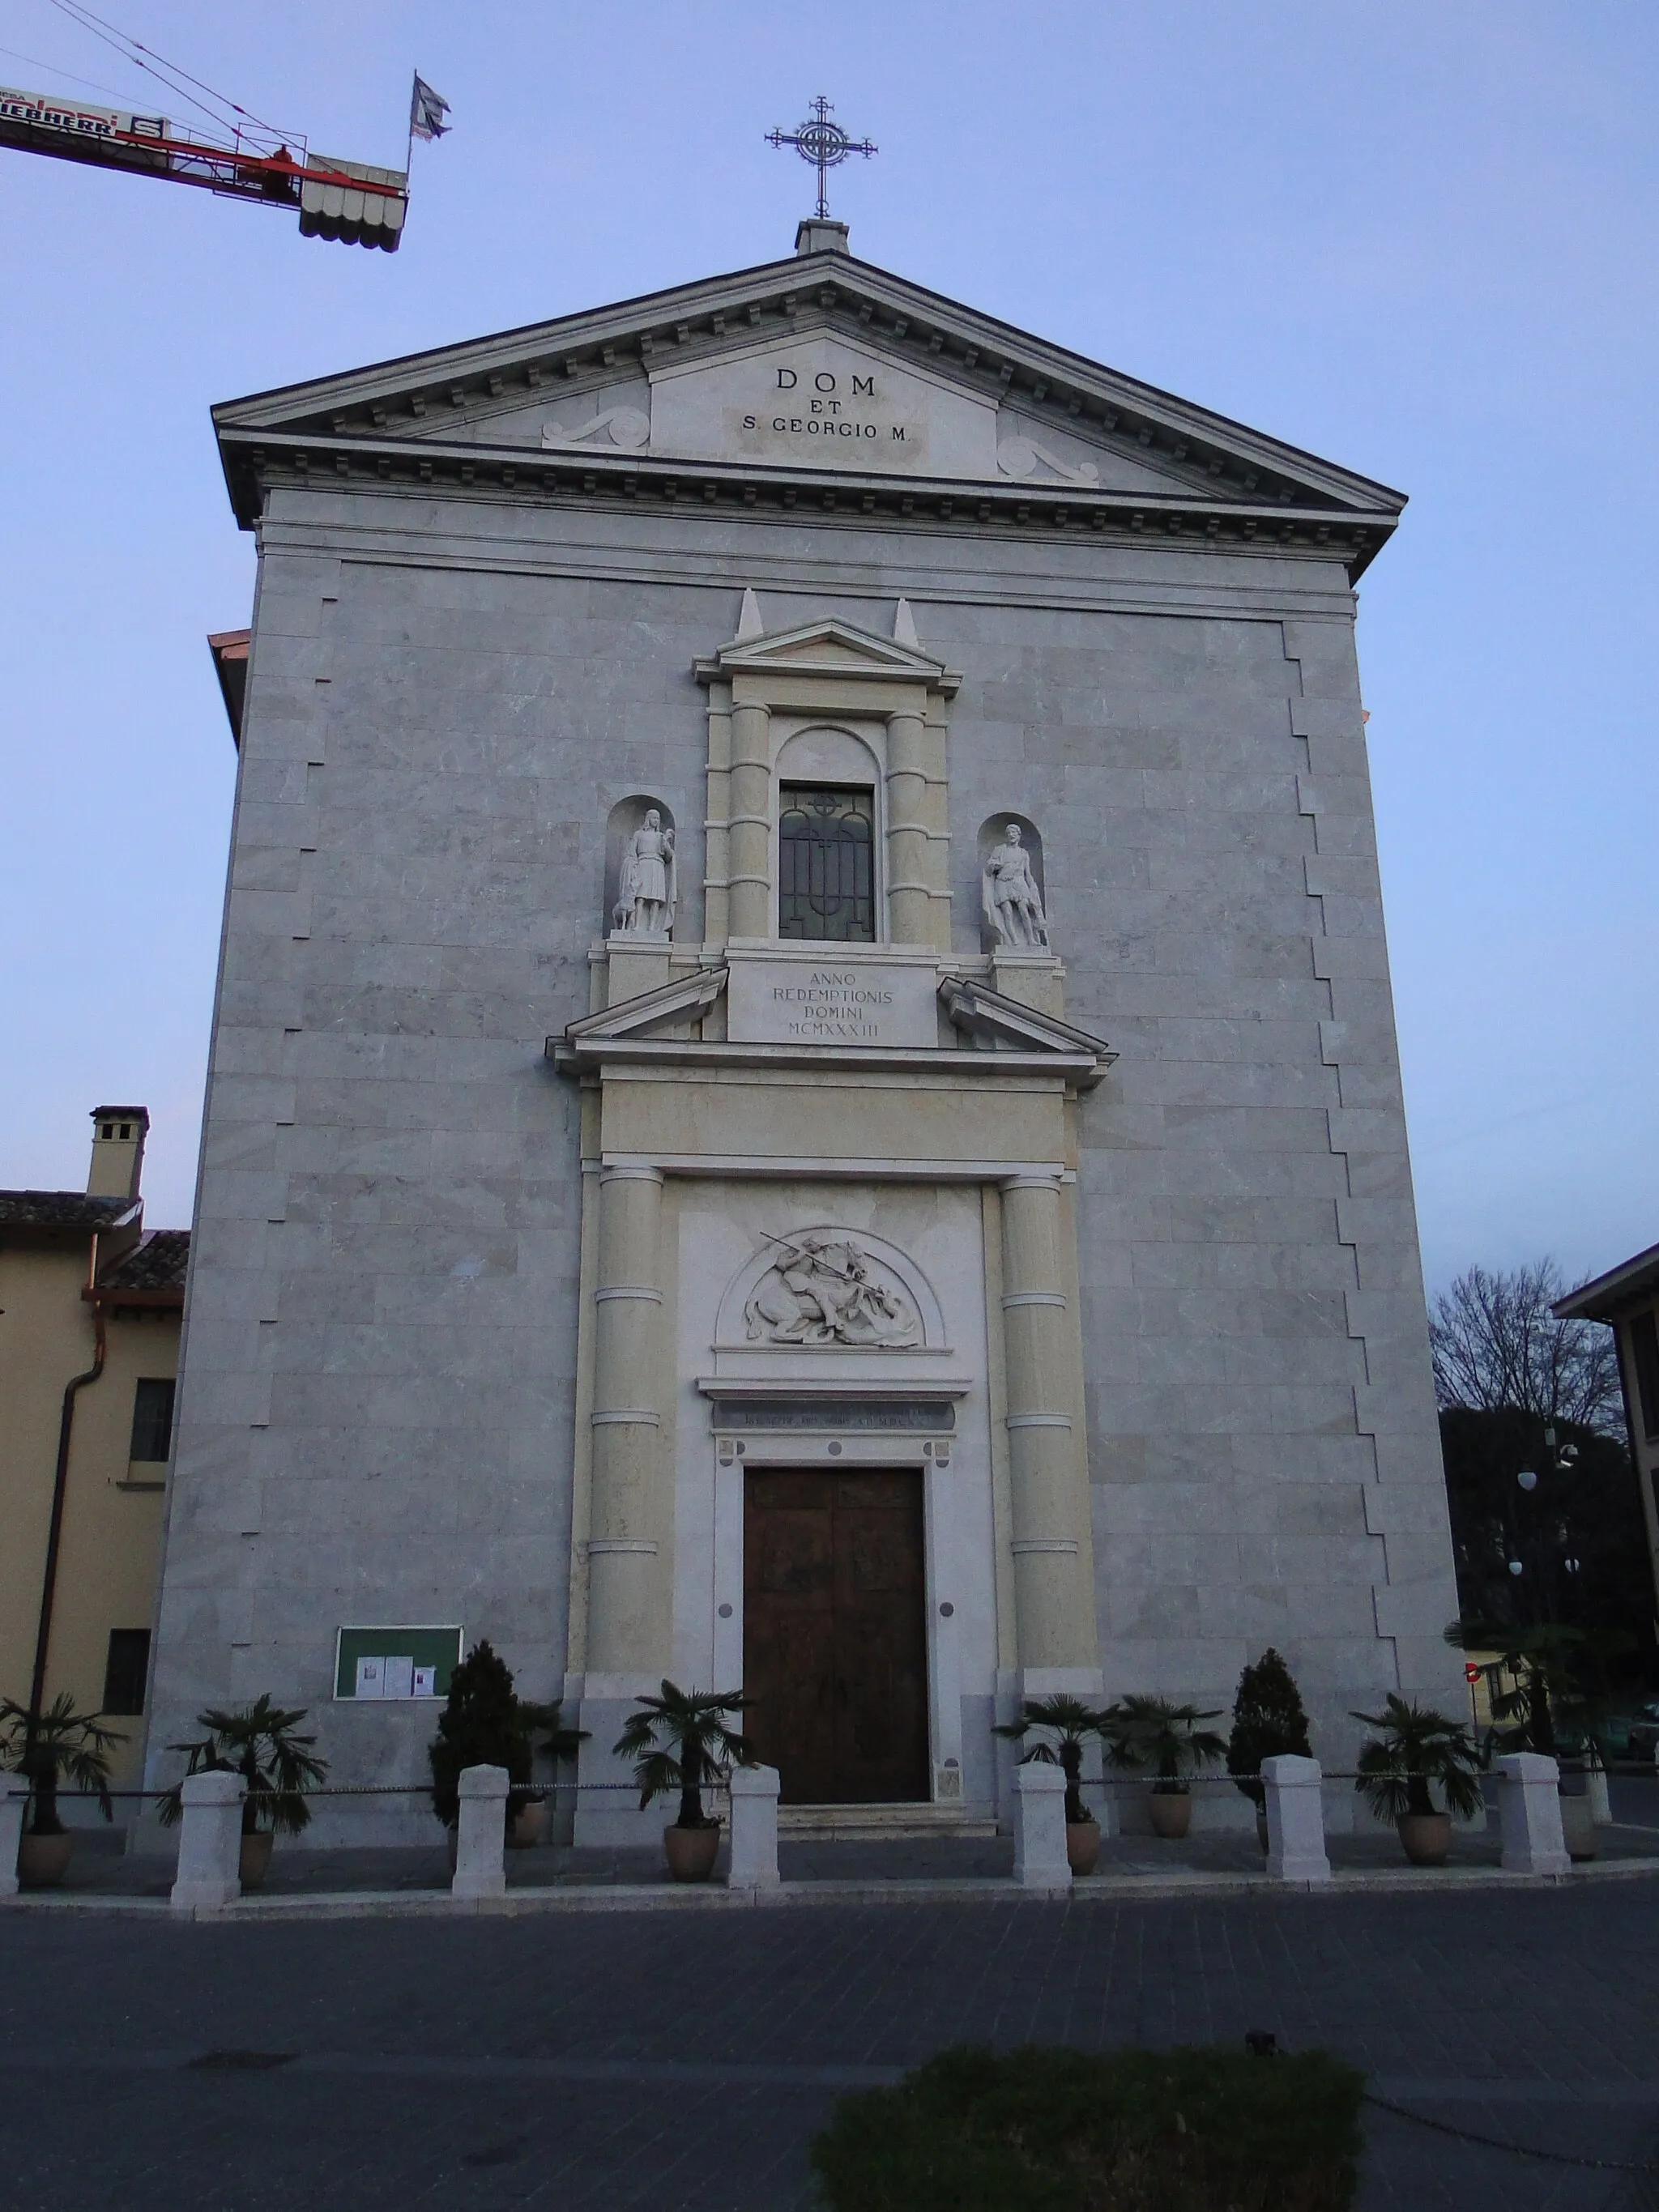 Photo showing: Facciata della chiesa parrocchiale di san Giorgio.
Nese, fraz. di Alzano Lombardo (BG), Italia